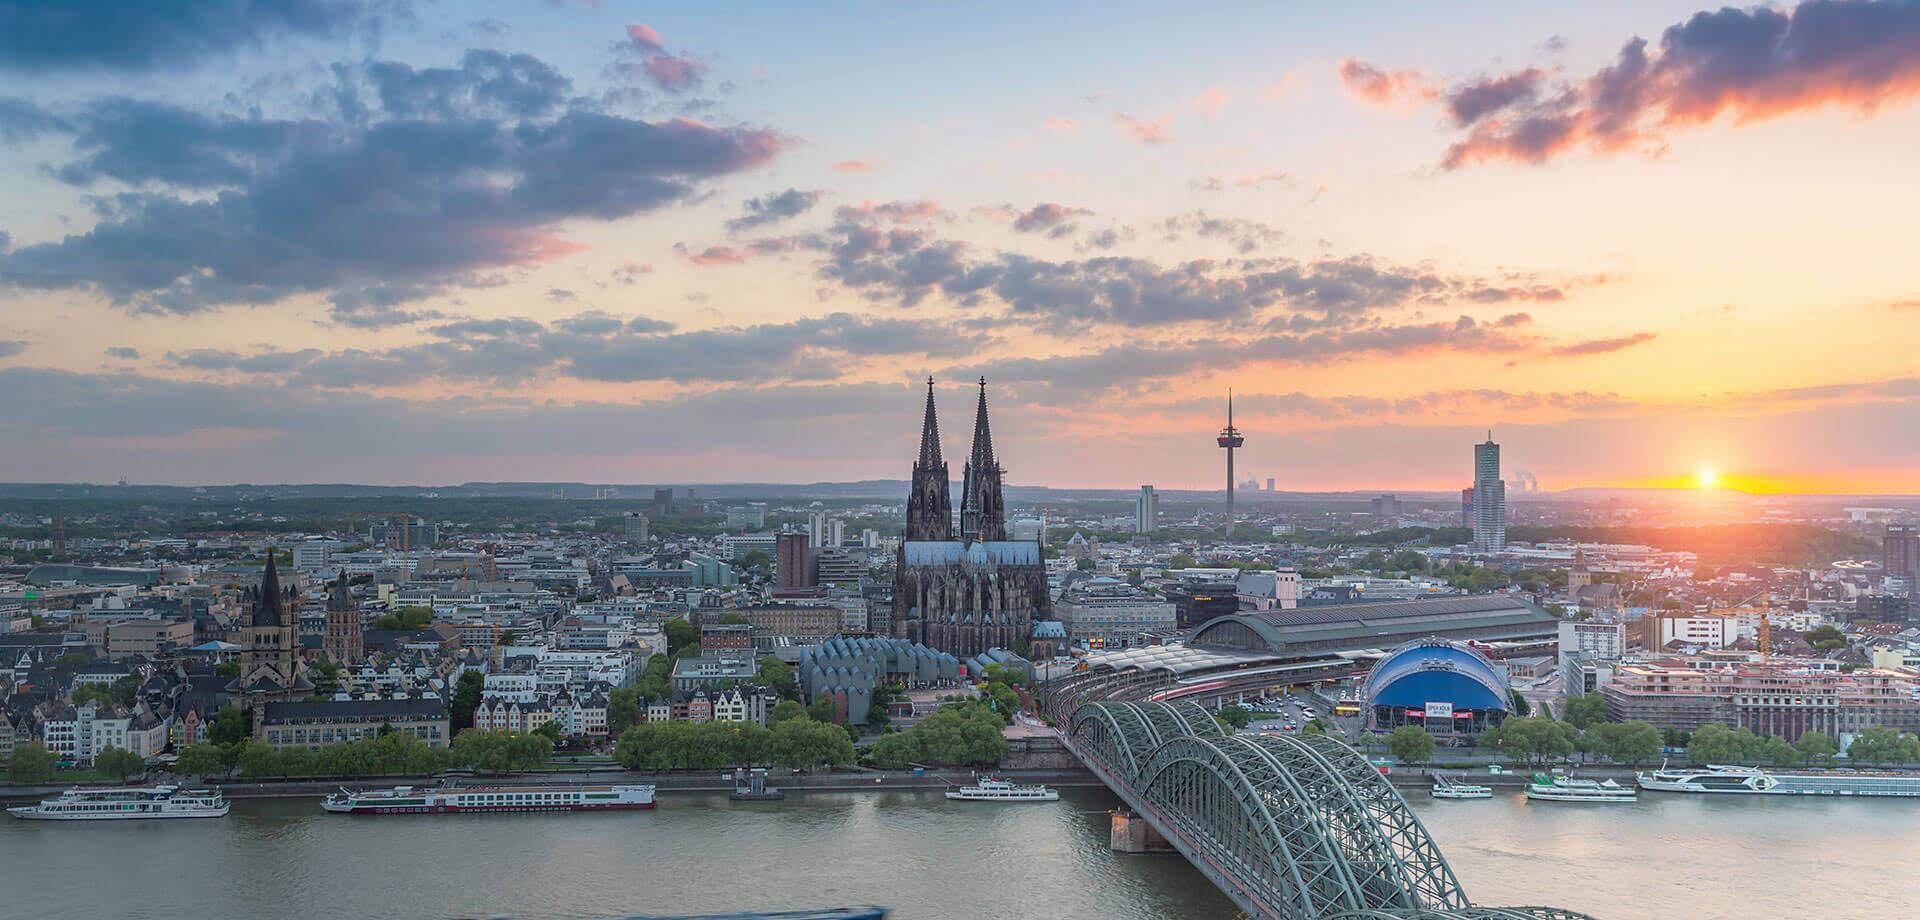 Quartillion Cologne - Cologne city view